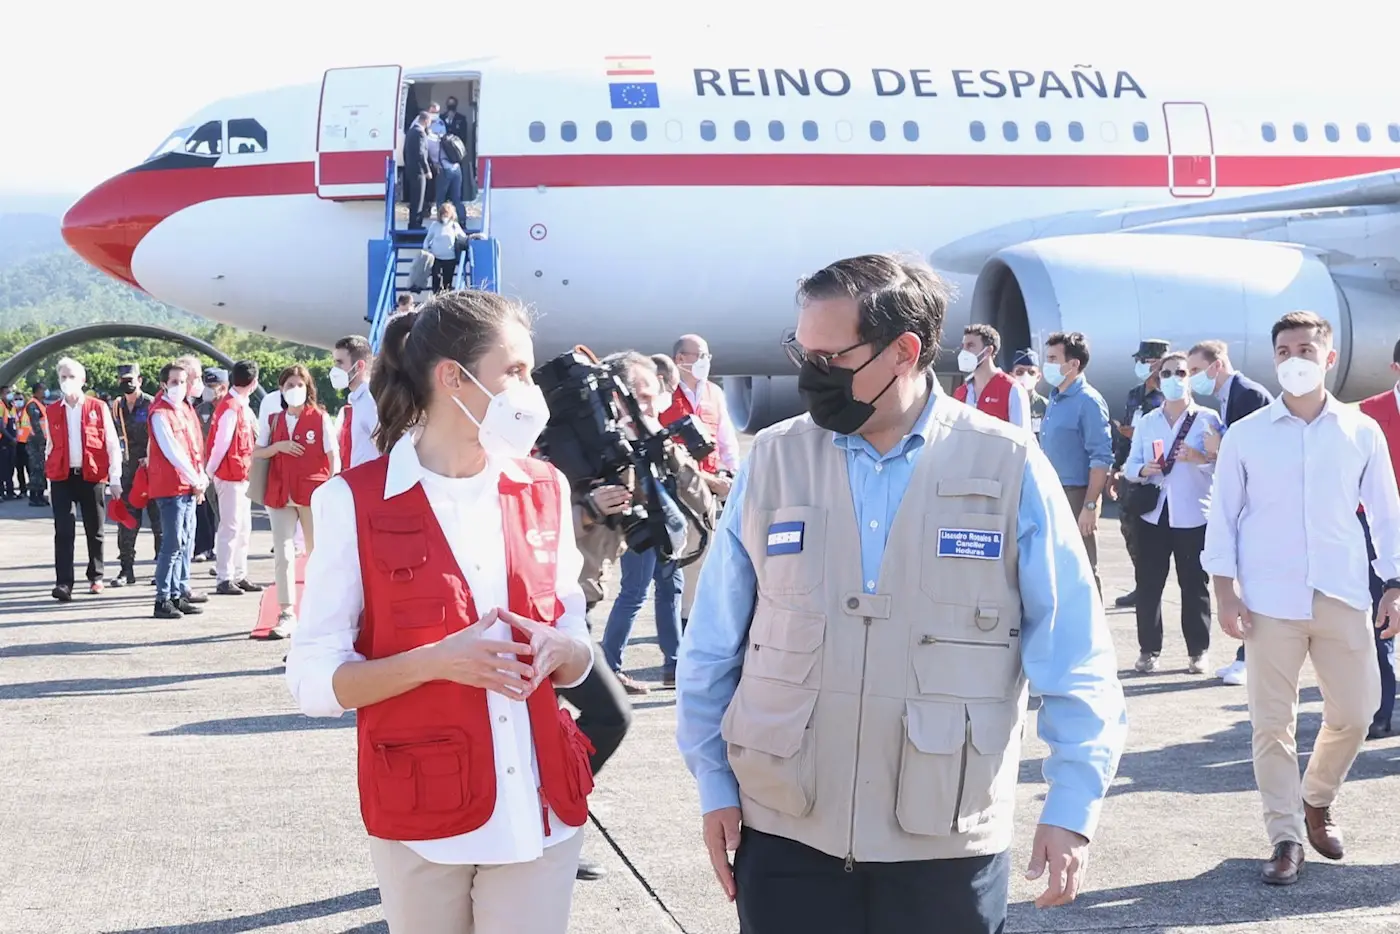 Queen Letizia of Spain arrived in Honduras for a humanitarian aid trip